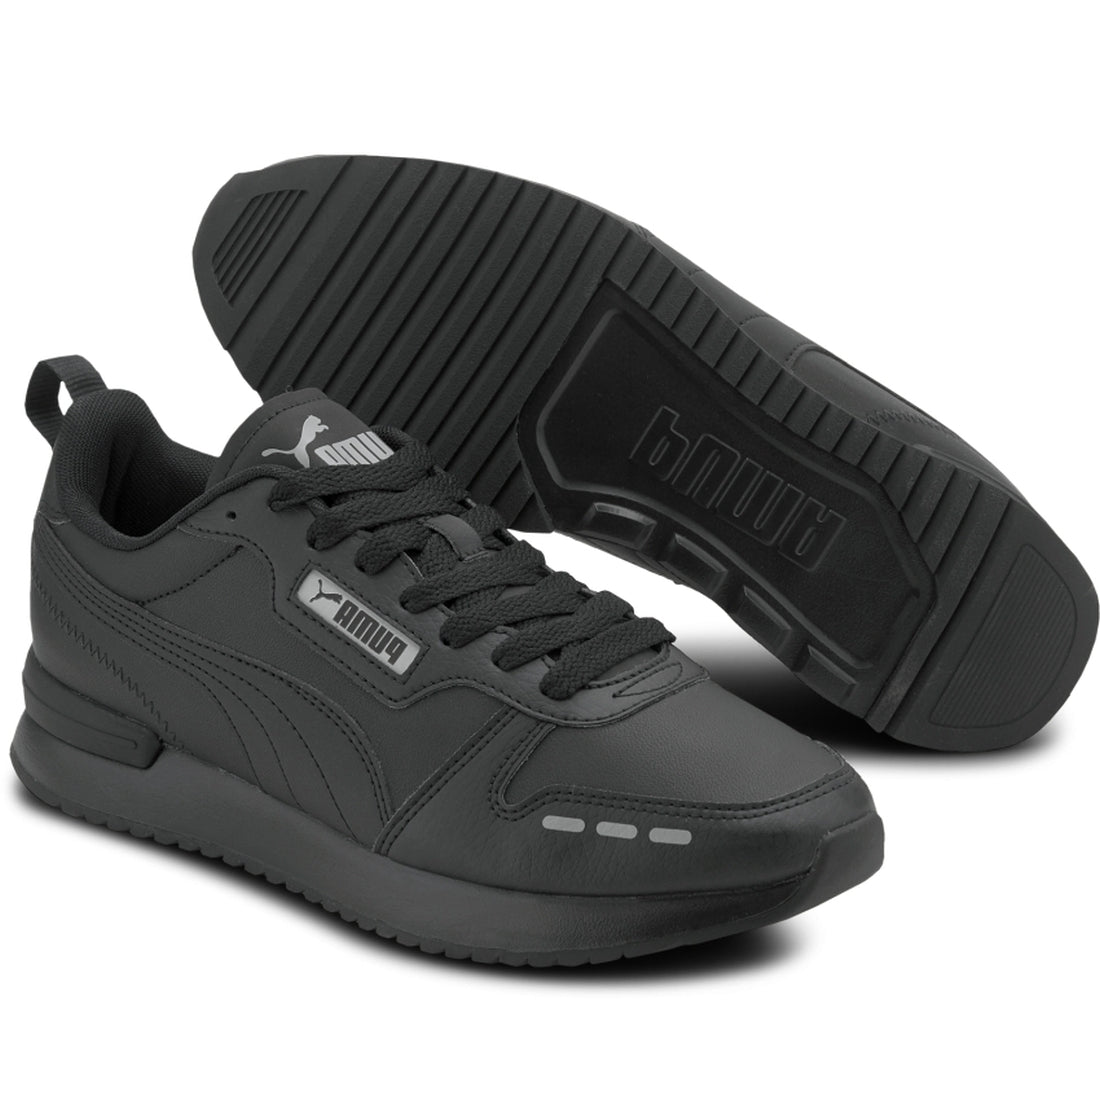 Puma Mens Black r78 sl shoes | Vilbury London